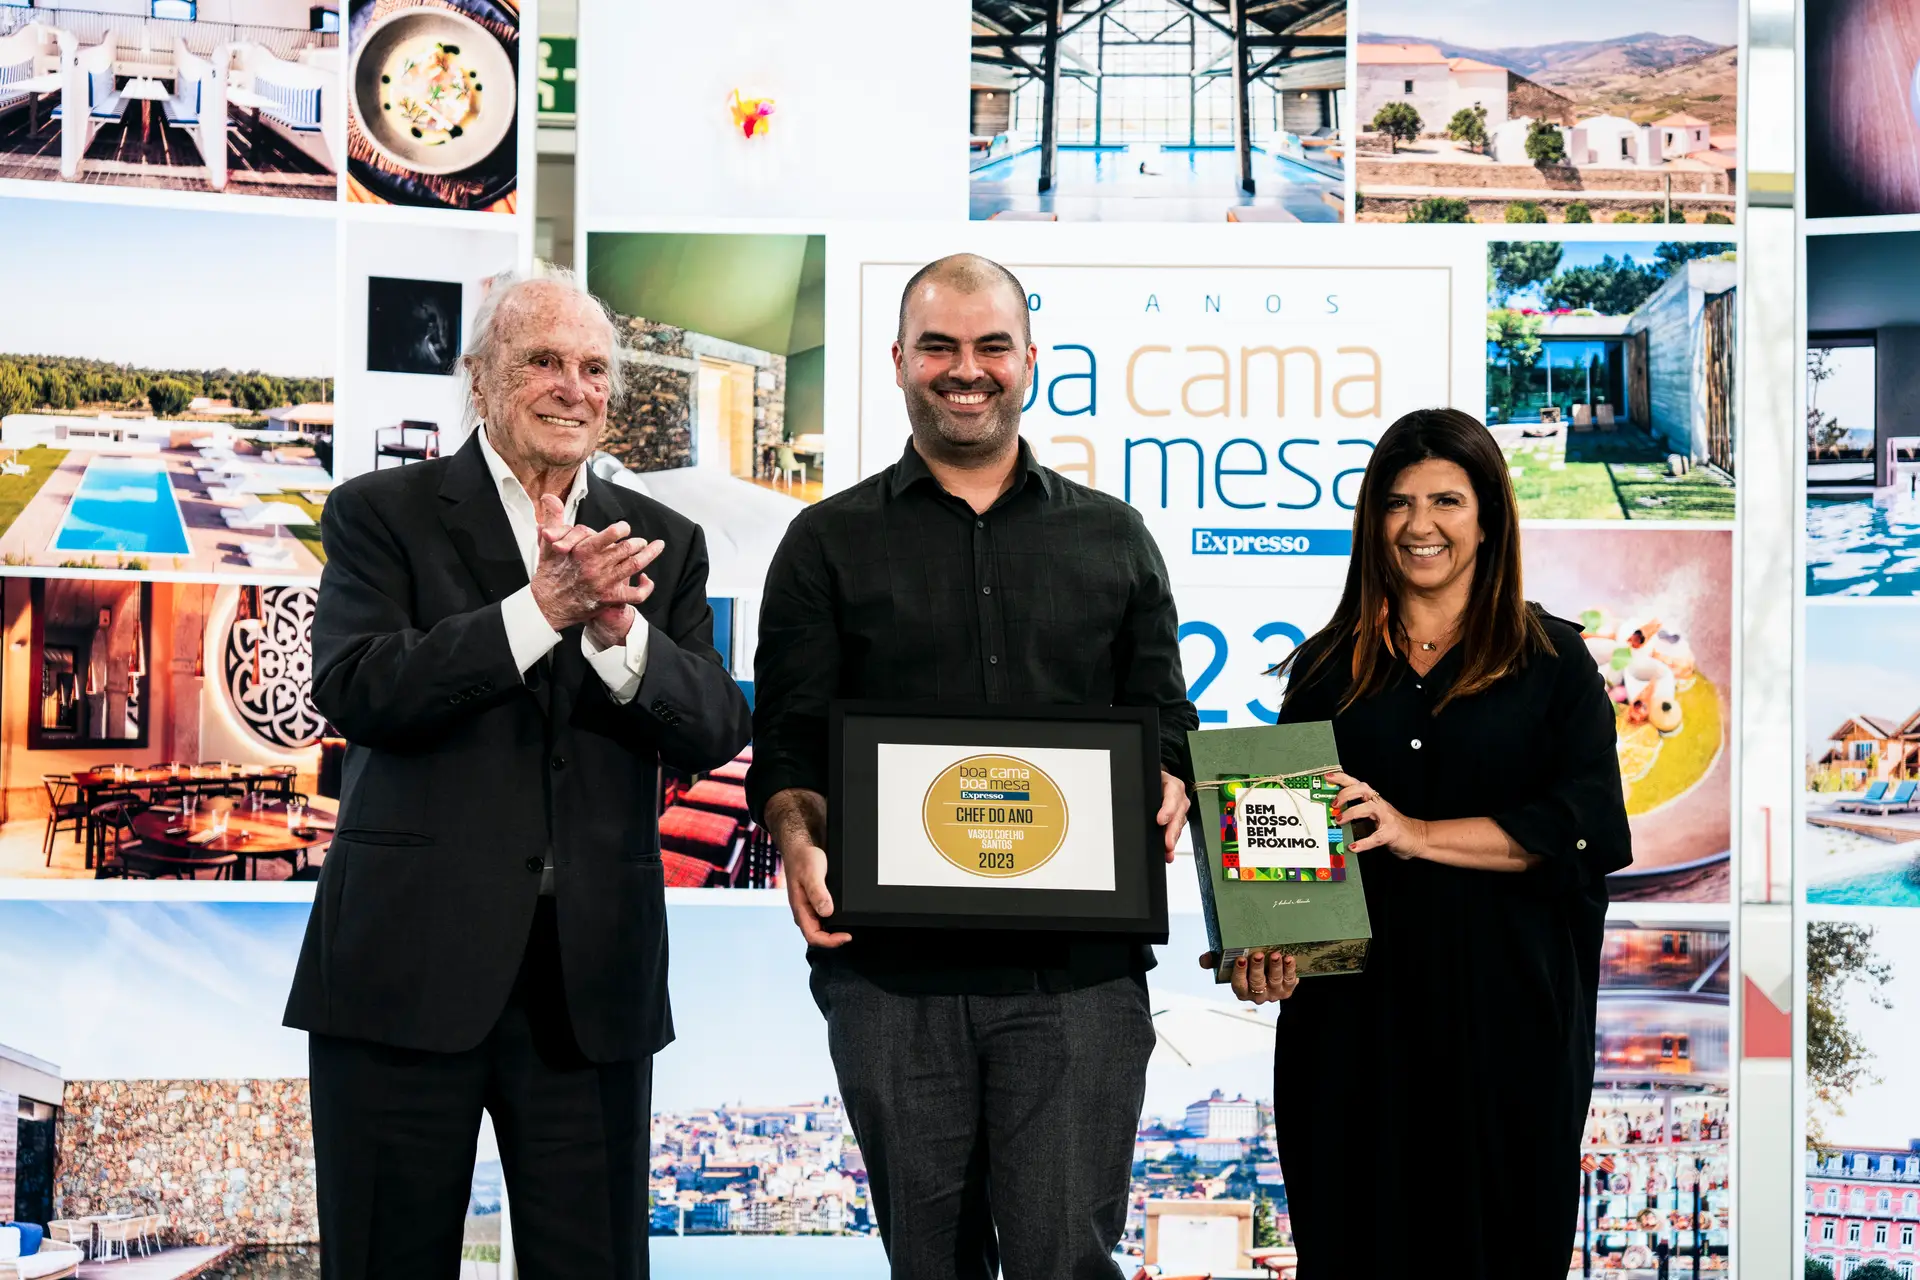 Vasco Coelho Santos, recebe o prémio Chef do Ano 2023 das mãos de Francisco Pinto Balsemão, chairman do Grupo Impresa, e de Vanessa Silva, diretira de marketing do Recheio